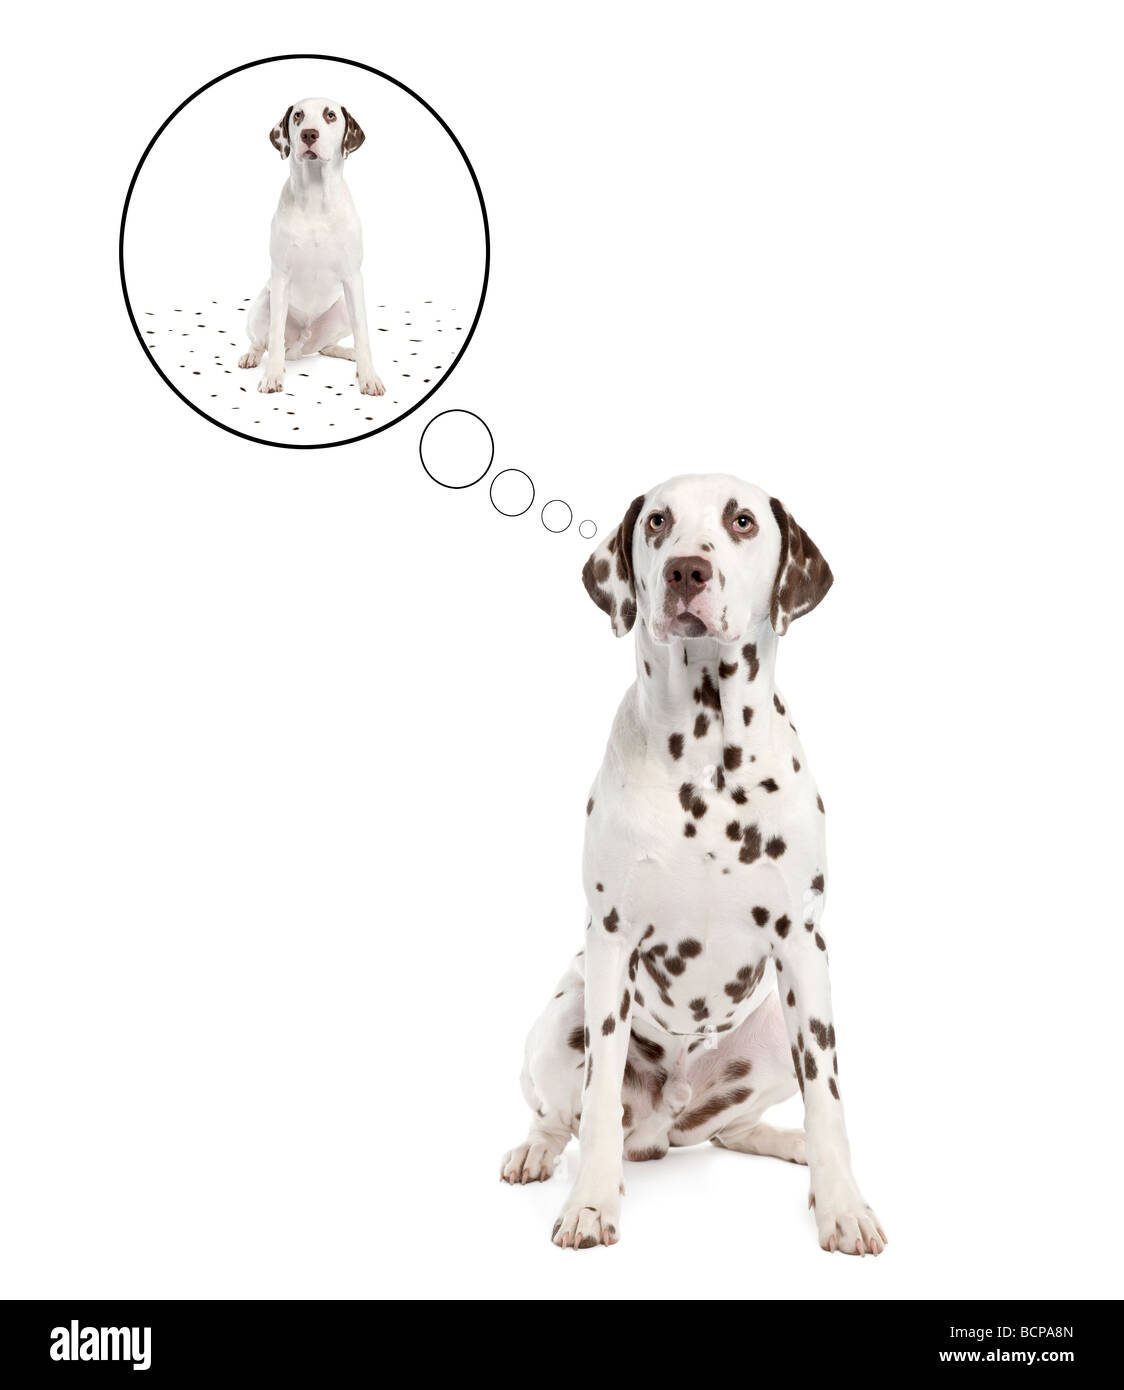 Dalmatiner Hund seine Spots in Idee Blase vor einem weißen Hintergrund zu vergießen, erschossen studio Stockfoto